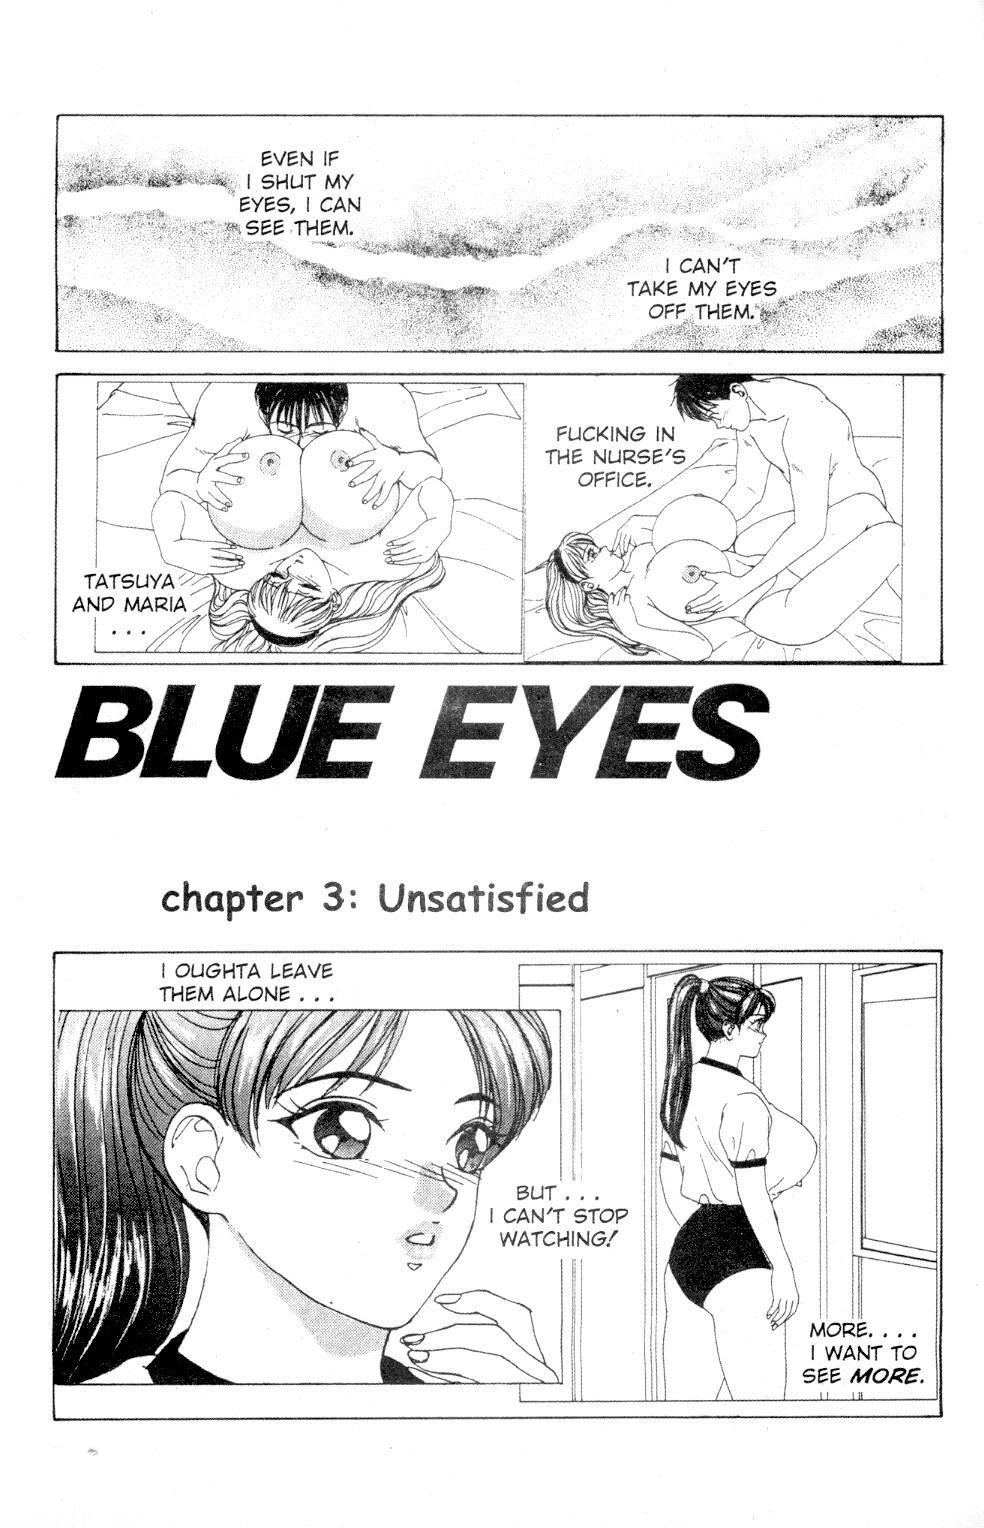 Blue Eyes Vol 1 Issue 3 2